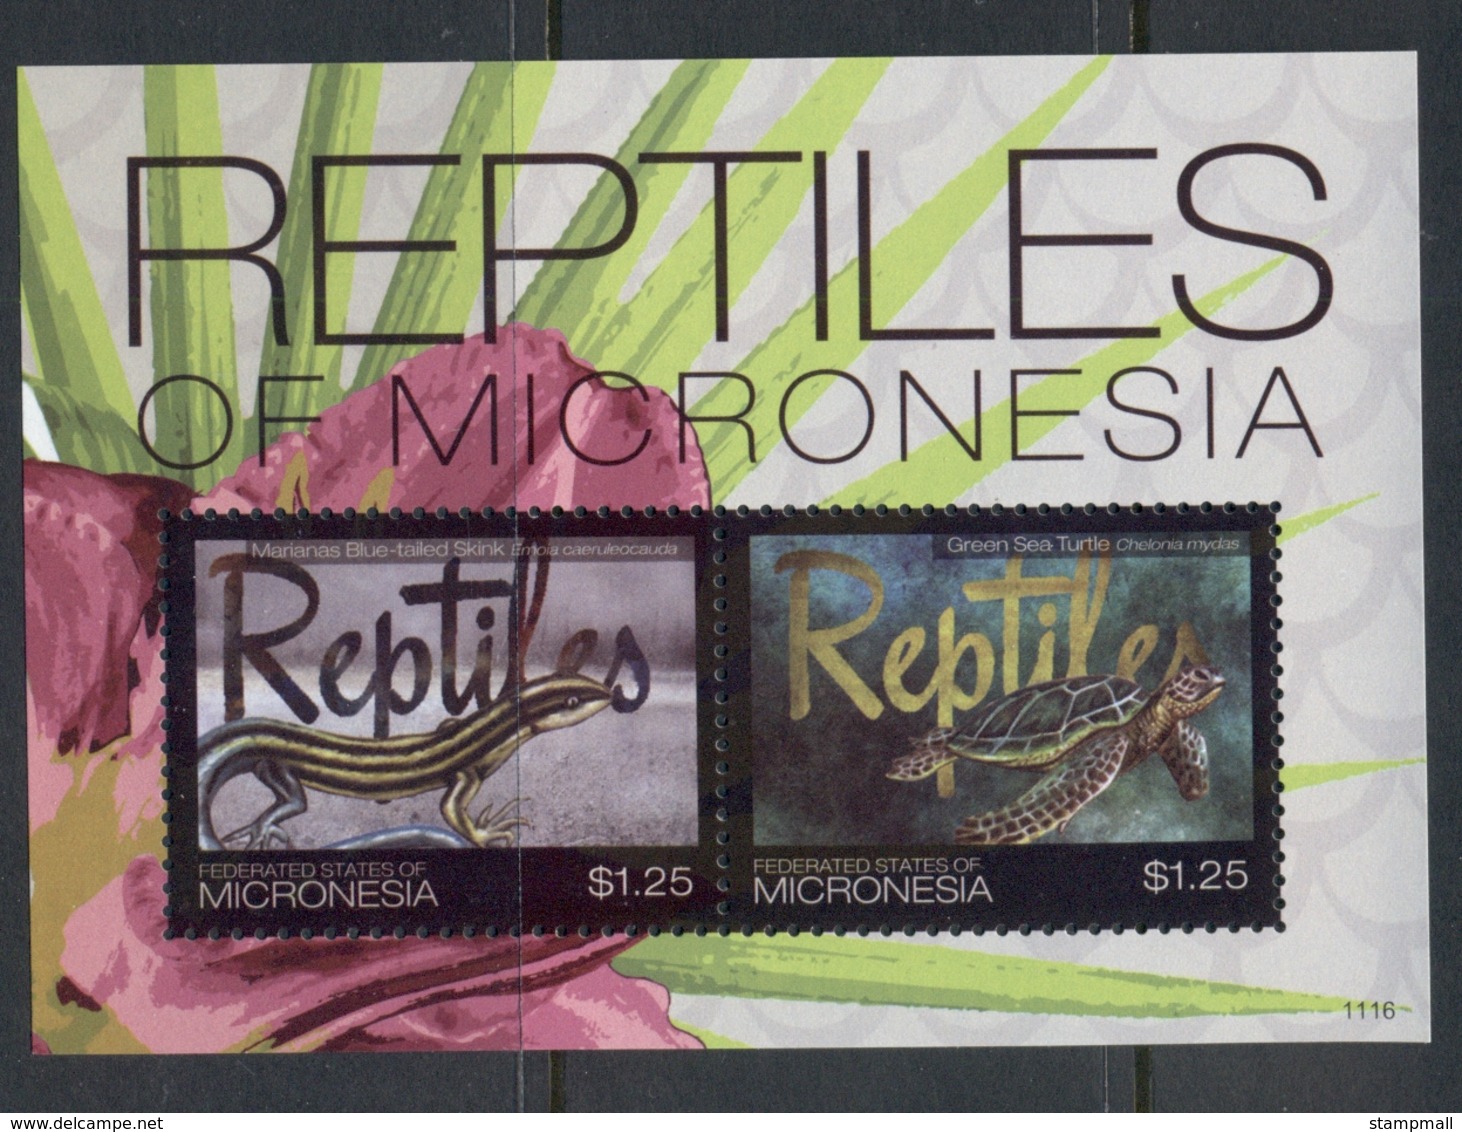 Micronesia 2011 Reptiles Of Micronesia MS MUH - Micronesia